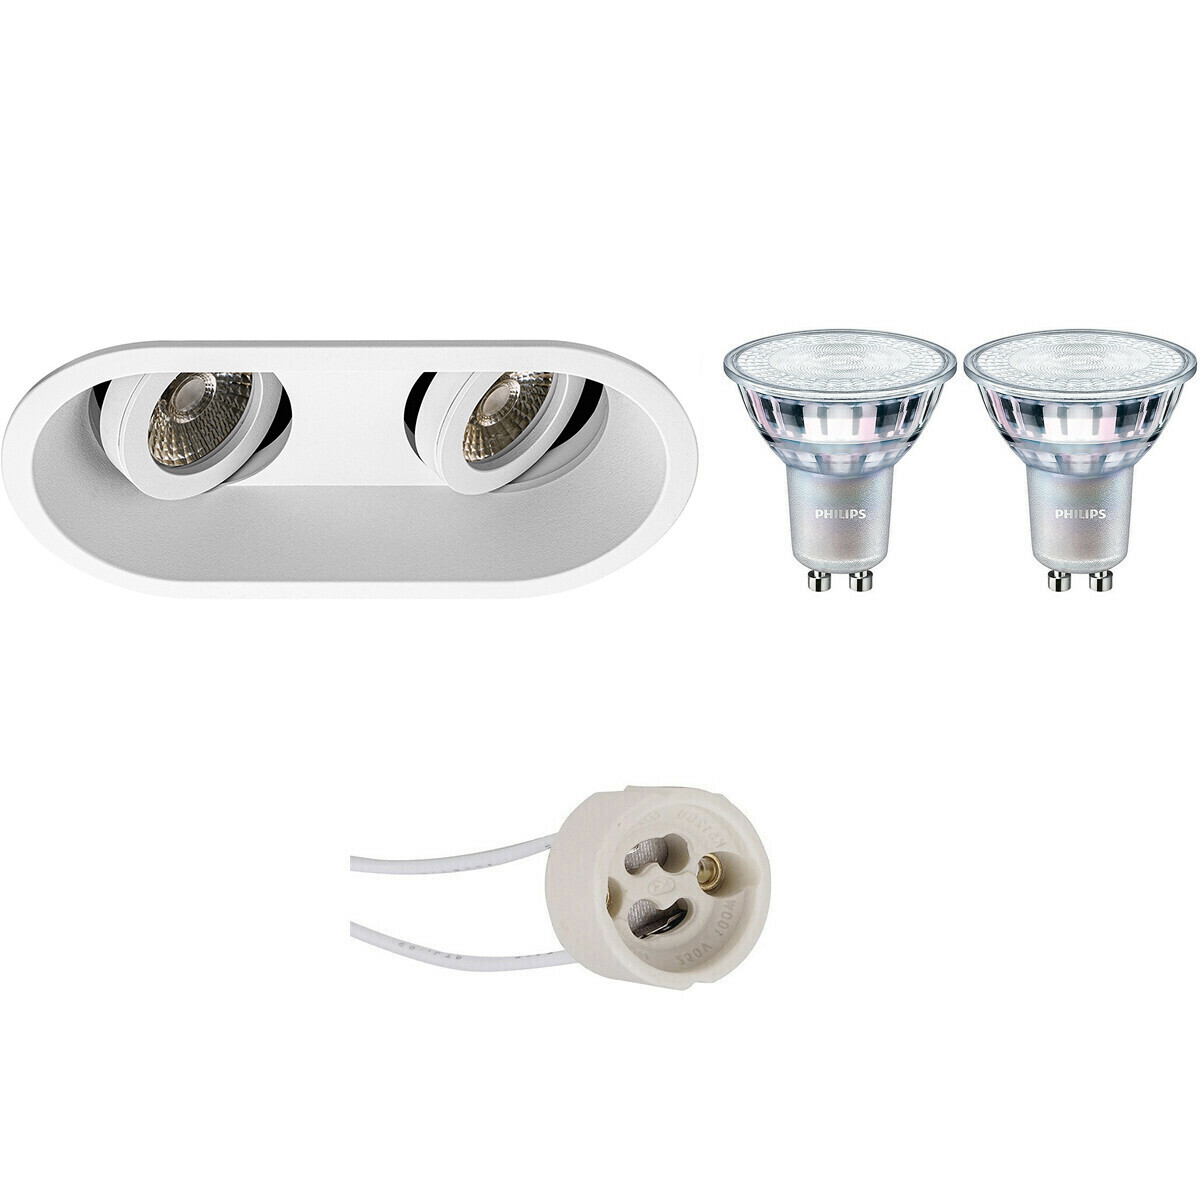 BES LED LED Spot Set - Pragmi Zano Pro - GU10 Fitting - Inbouw Ovaal Dubbel - Mat Wit - Kantelbaar - 185x93mm - Philips - MASTER 927 36D VLE - 4.9W - Warm Wit 2200K-2700K - DimTone Dimbaar